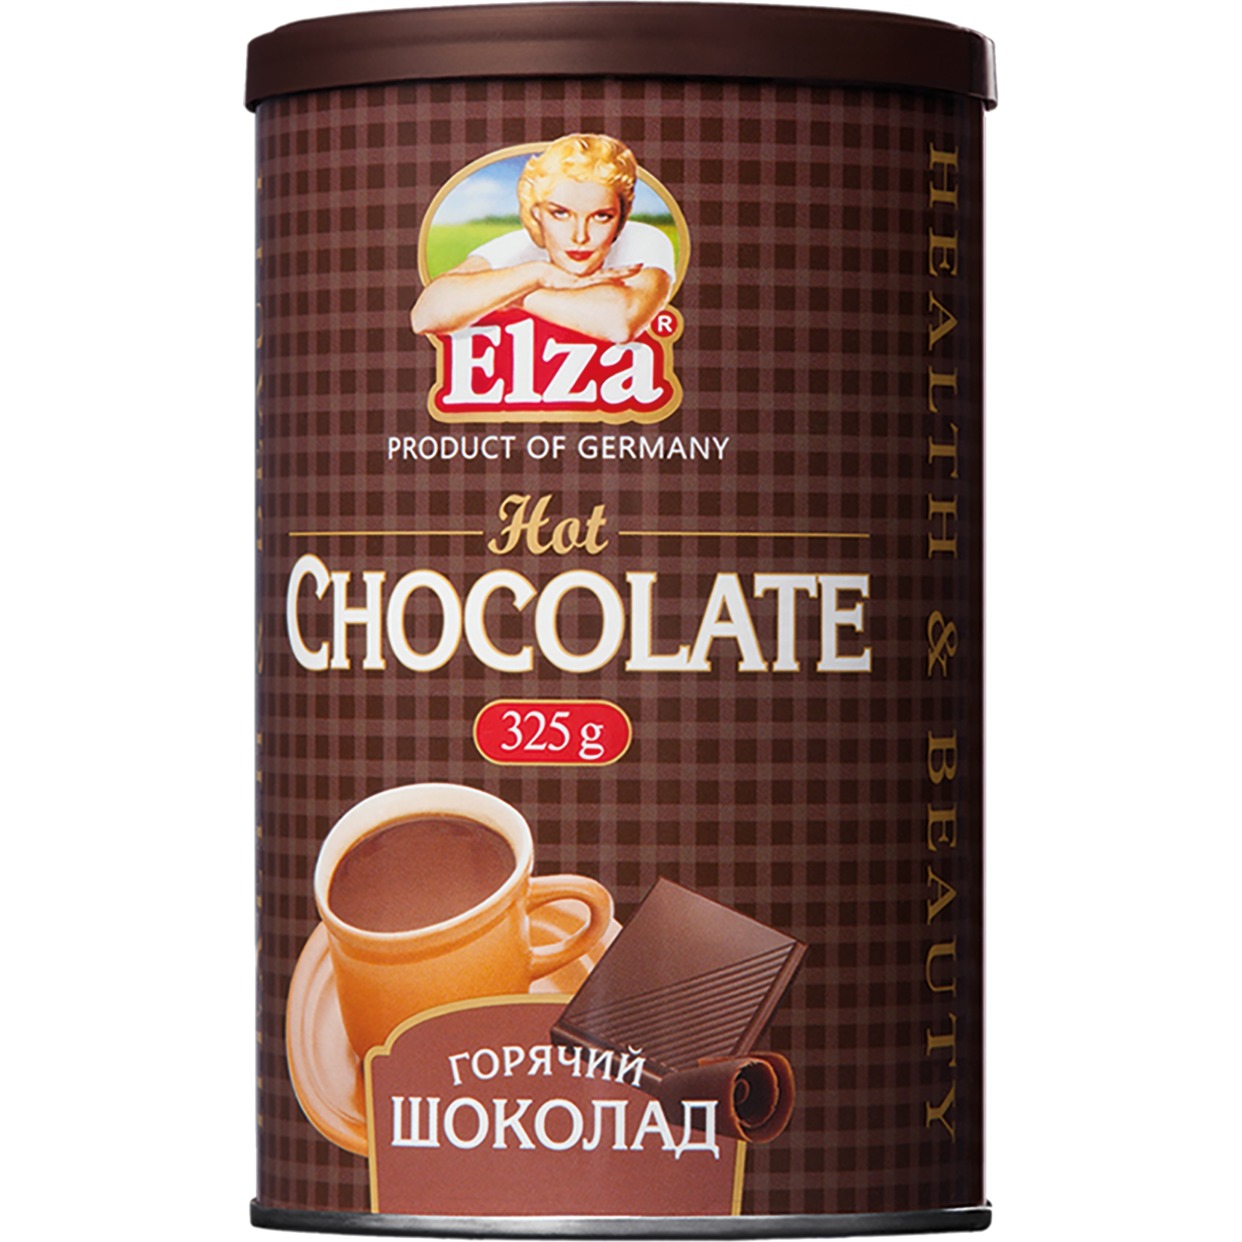 ELZA Напиток горячий шоколад 325г по акции в Пятерочке